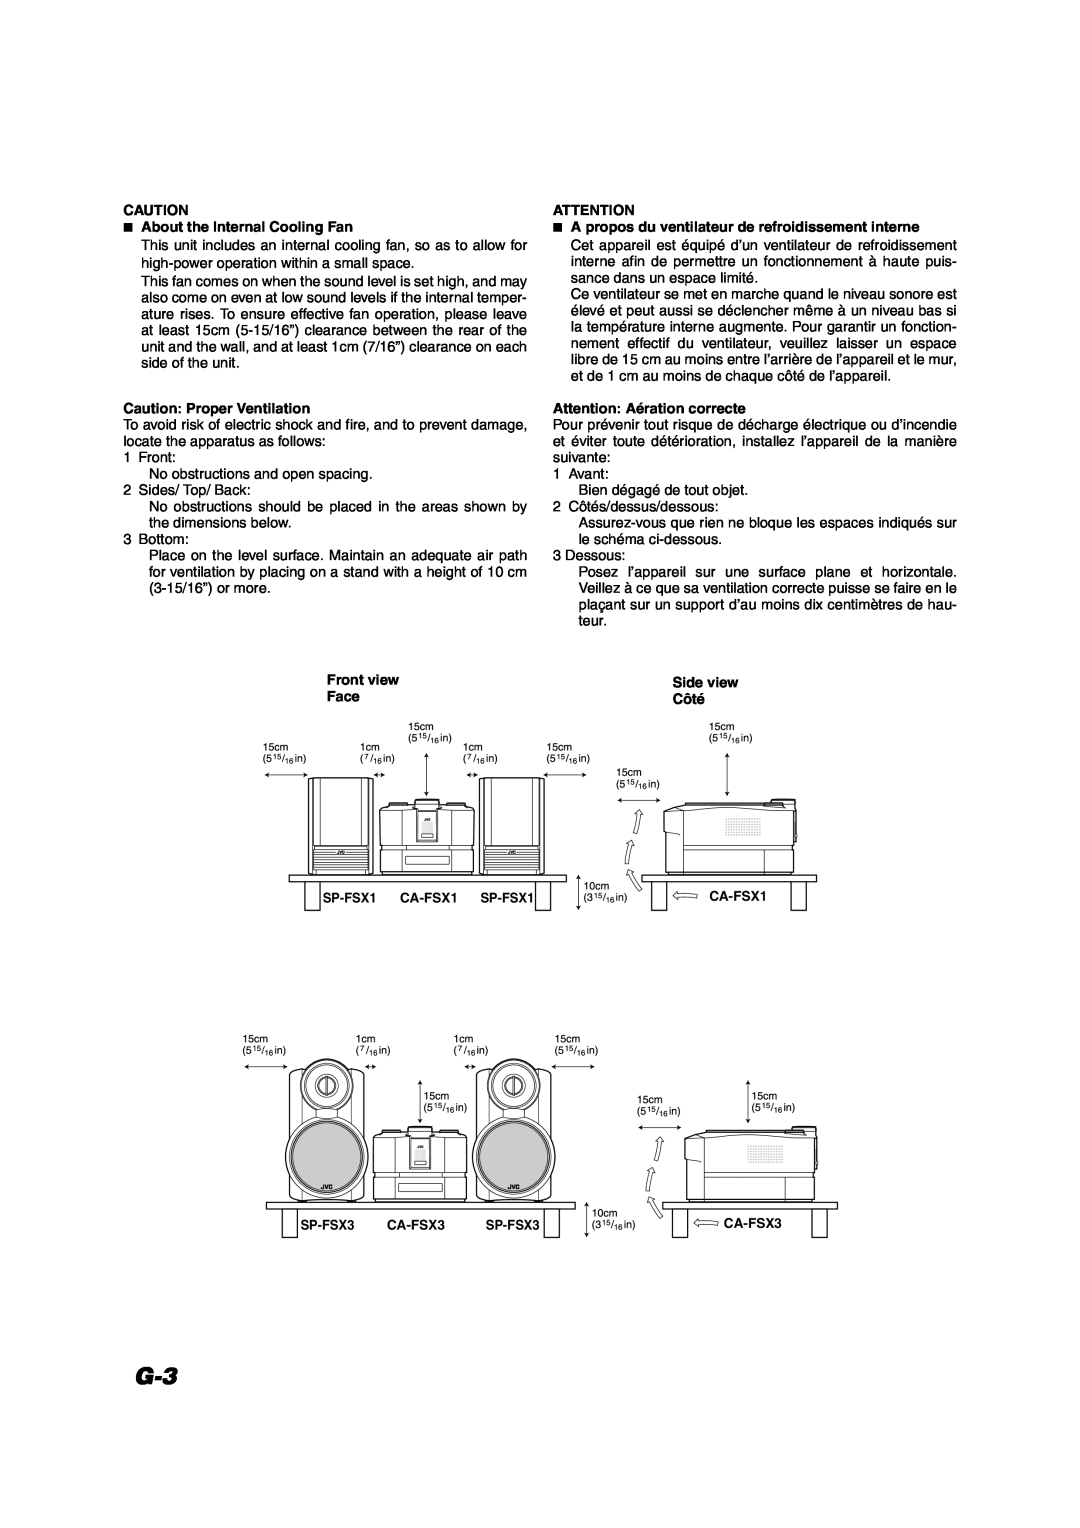 JVC FS-X1/FS-X3 15cm, 10cm, About the Internal Cooling Fan, Caution Proper Ventilation, Attention Aération correcte, Côté 